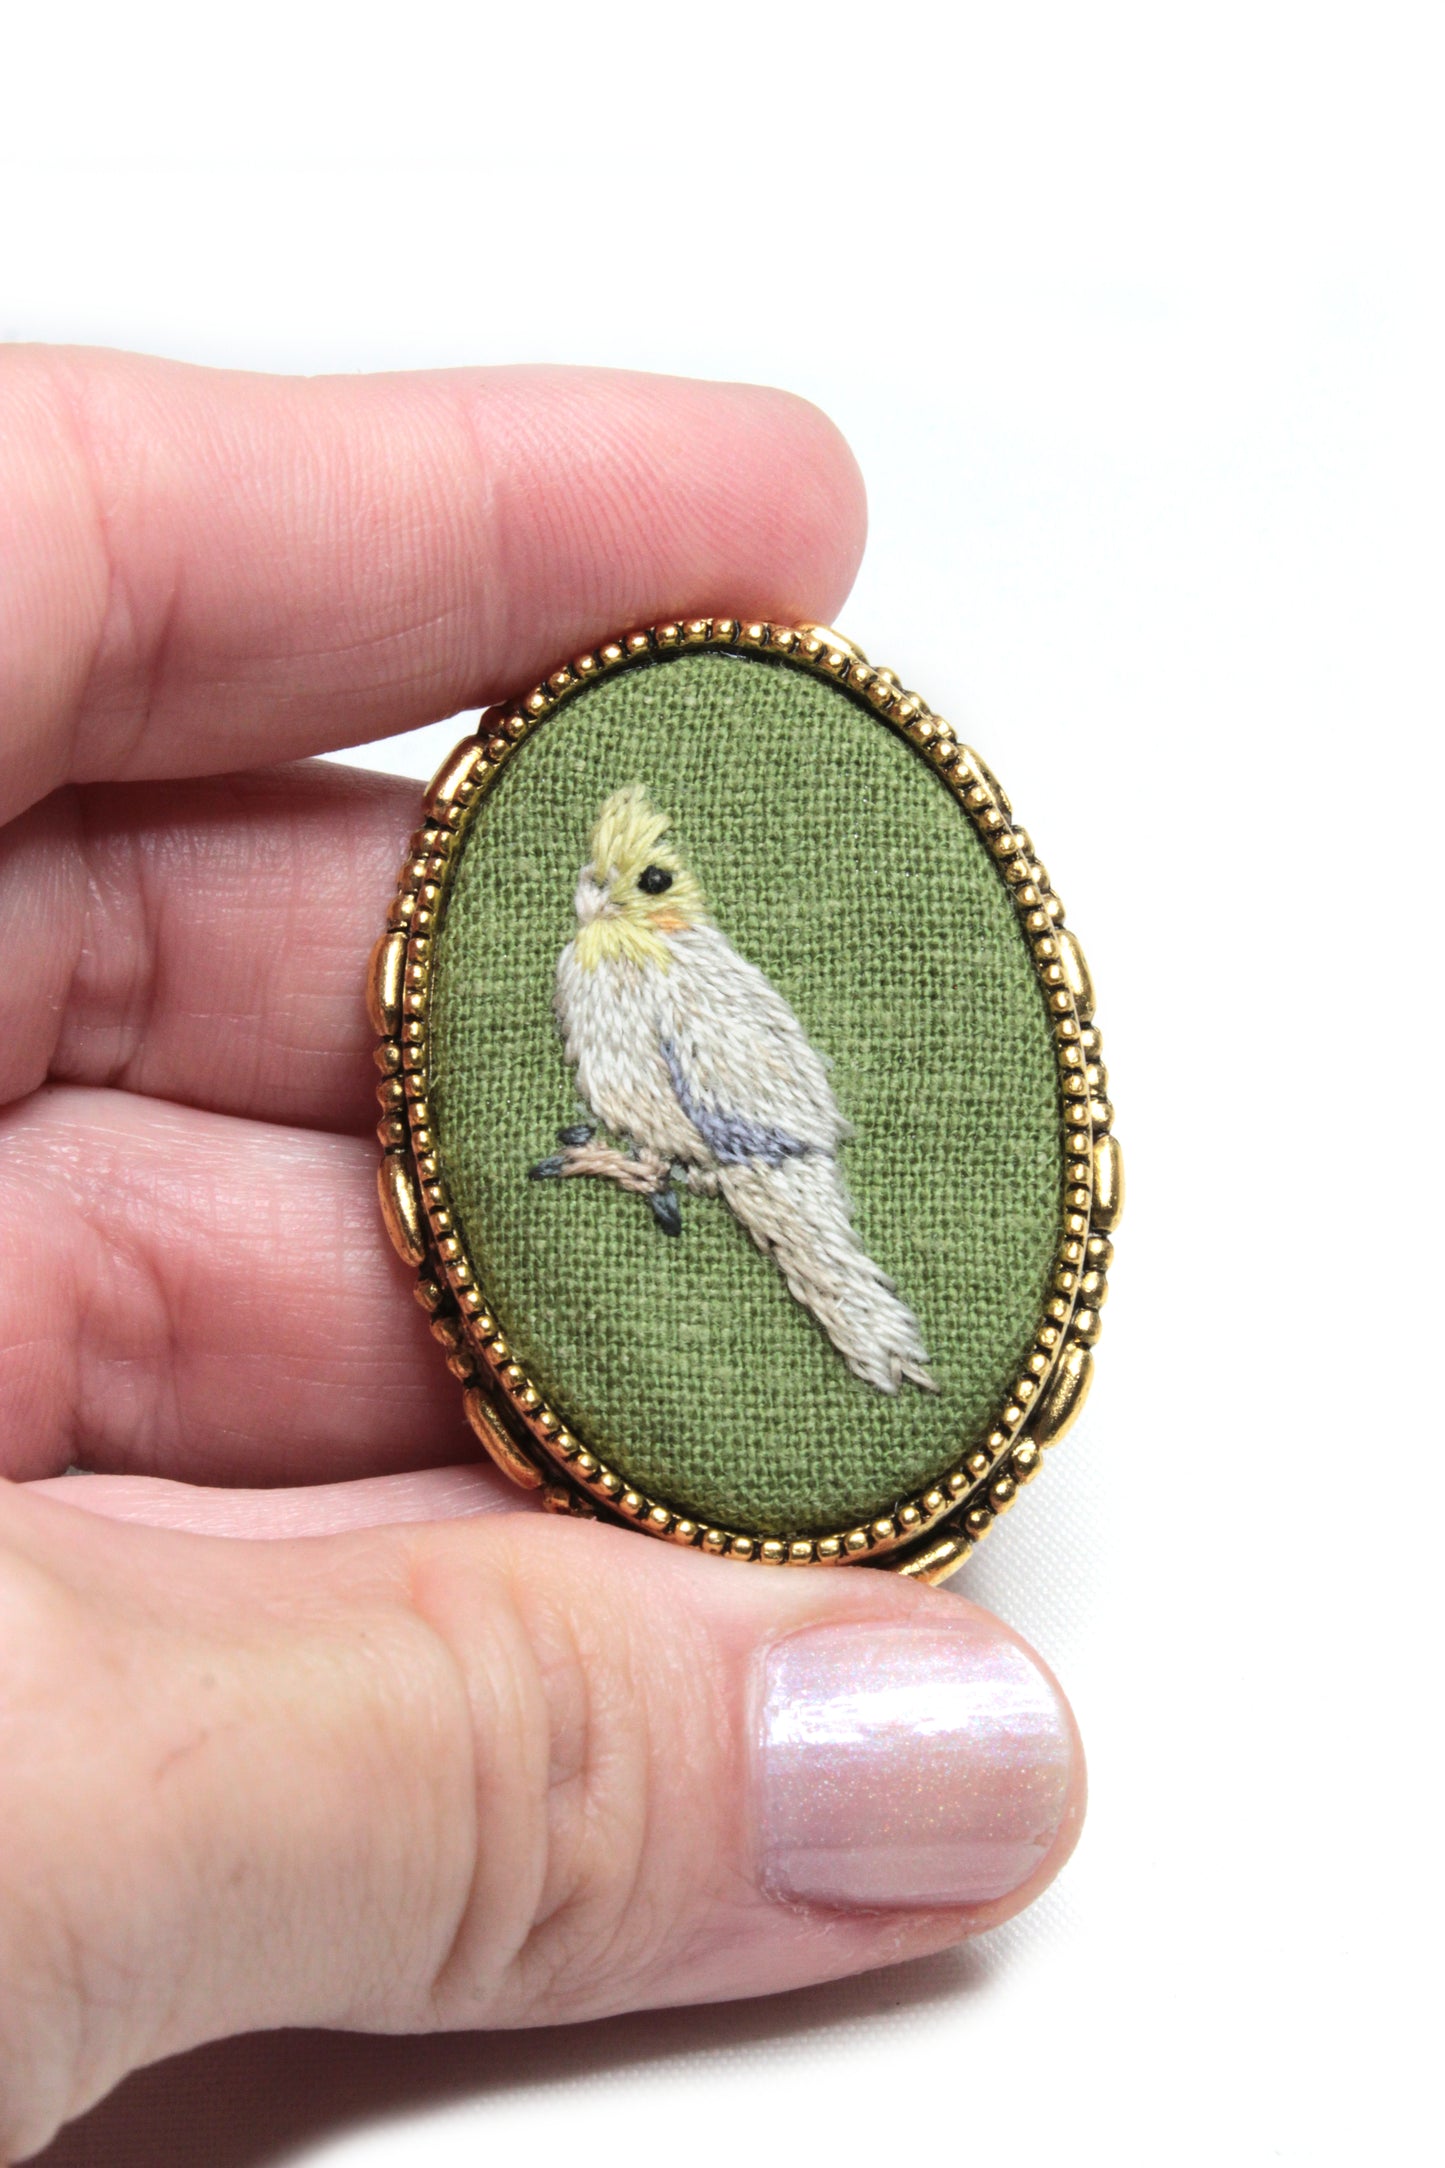 Embroidery Cockatiel Necklace/Brooch